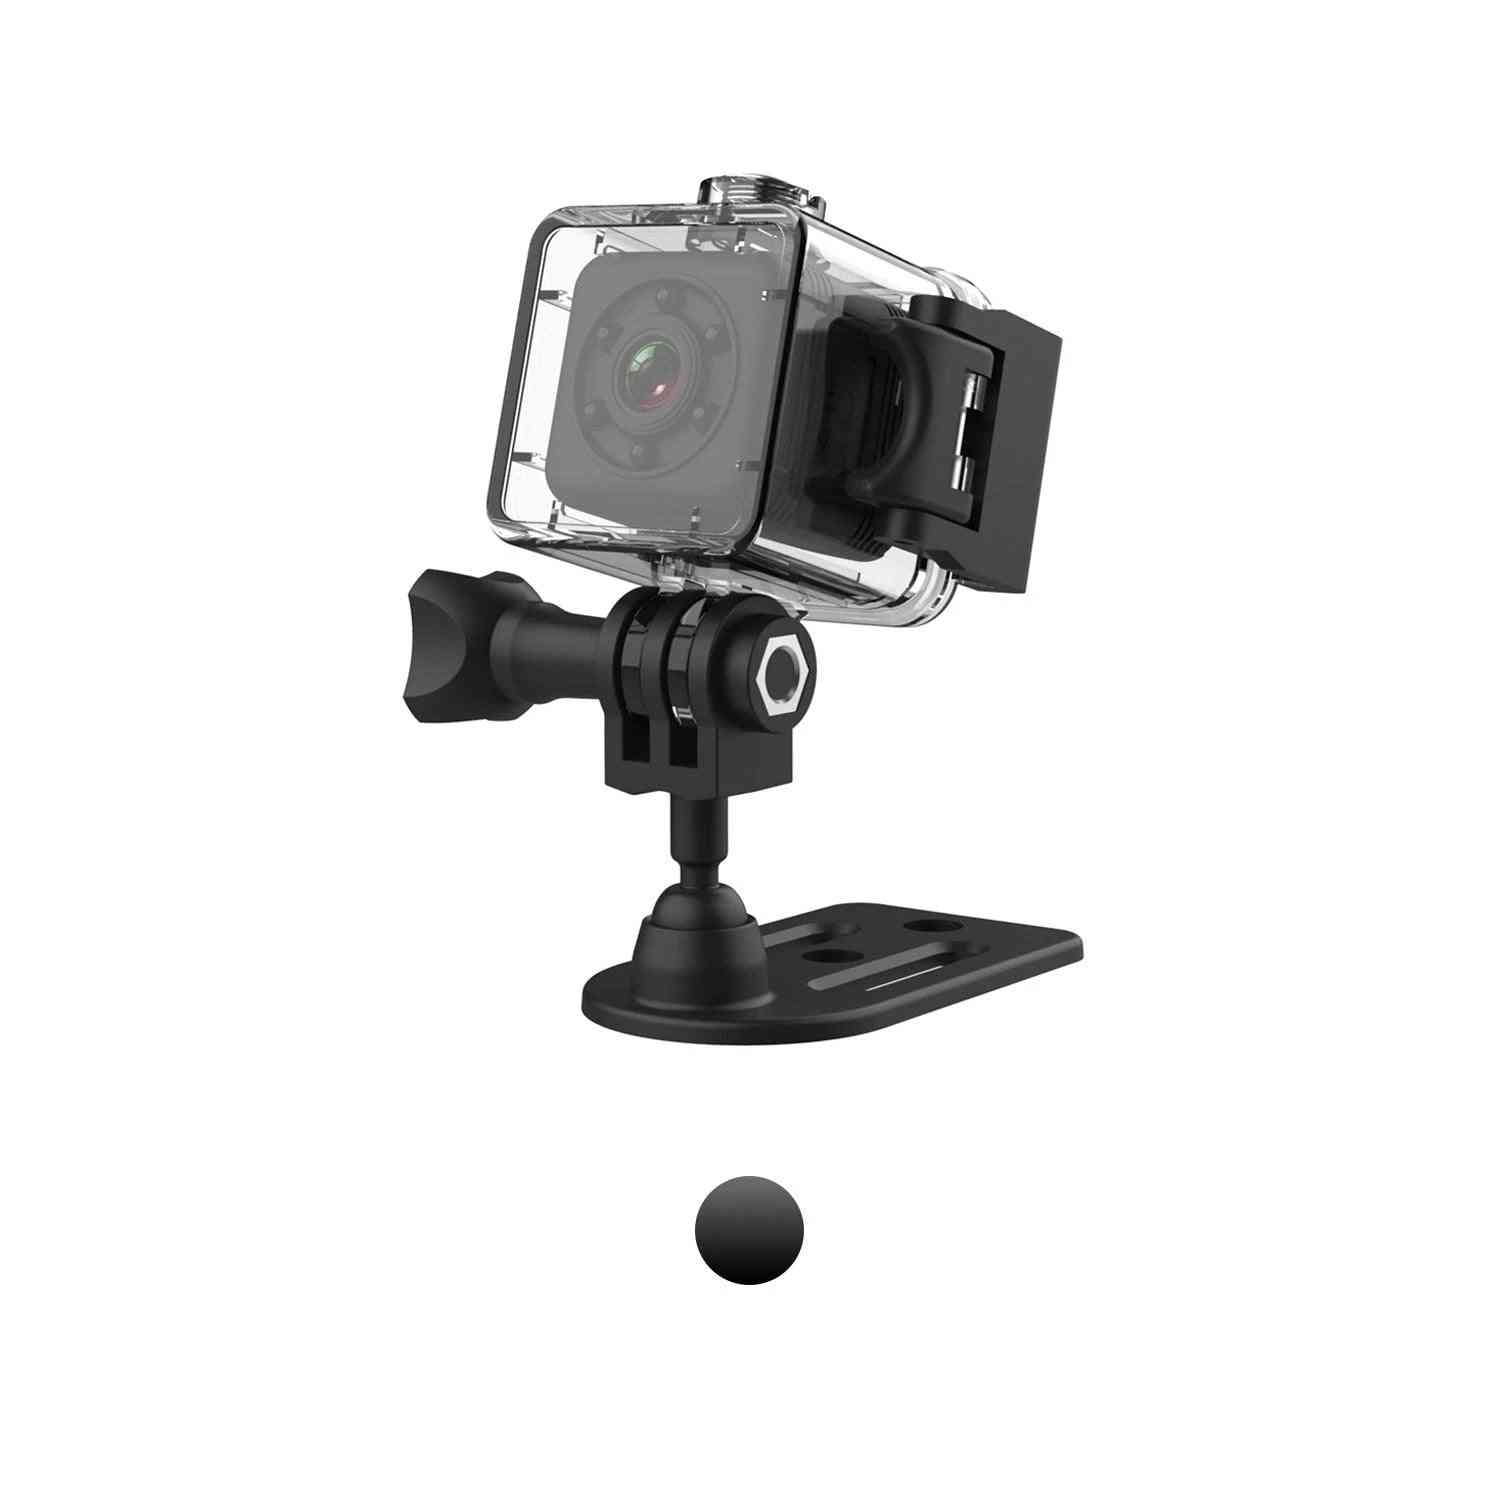 Sports sq29 mini ip kamera for nattesyn, vanntett videokamera bevegelse, dvr mikro kamera sport - sq11 svart